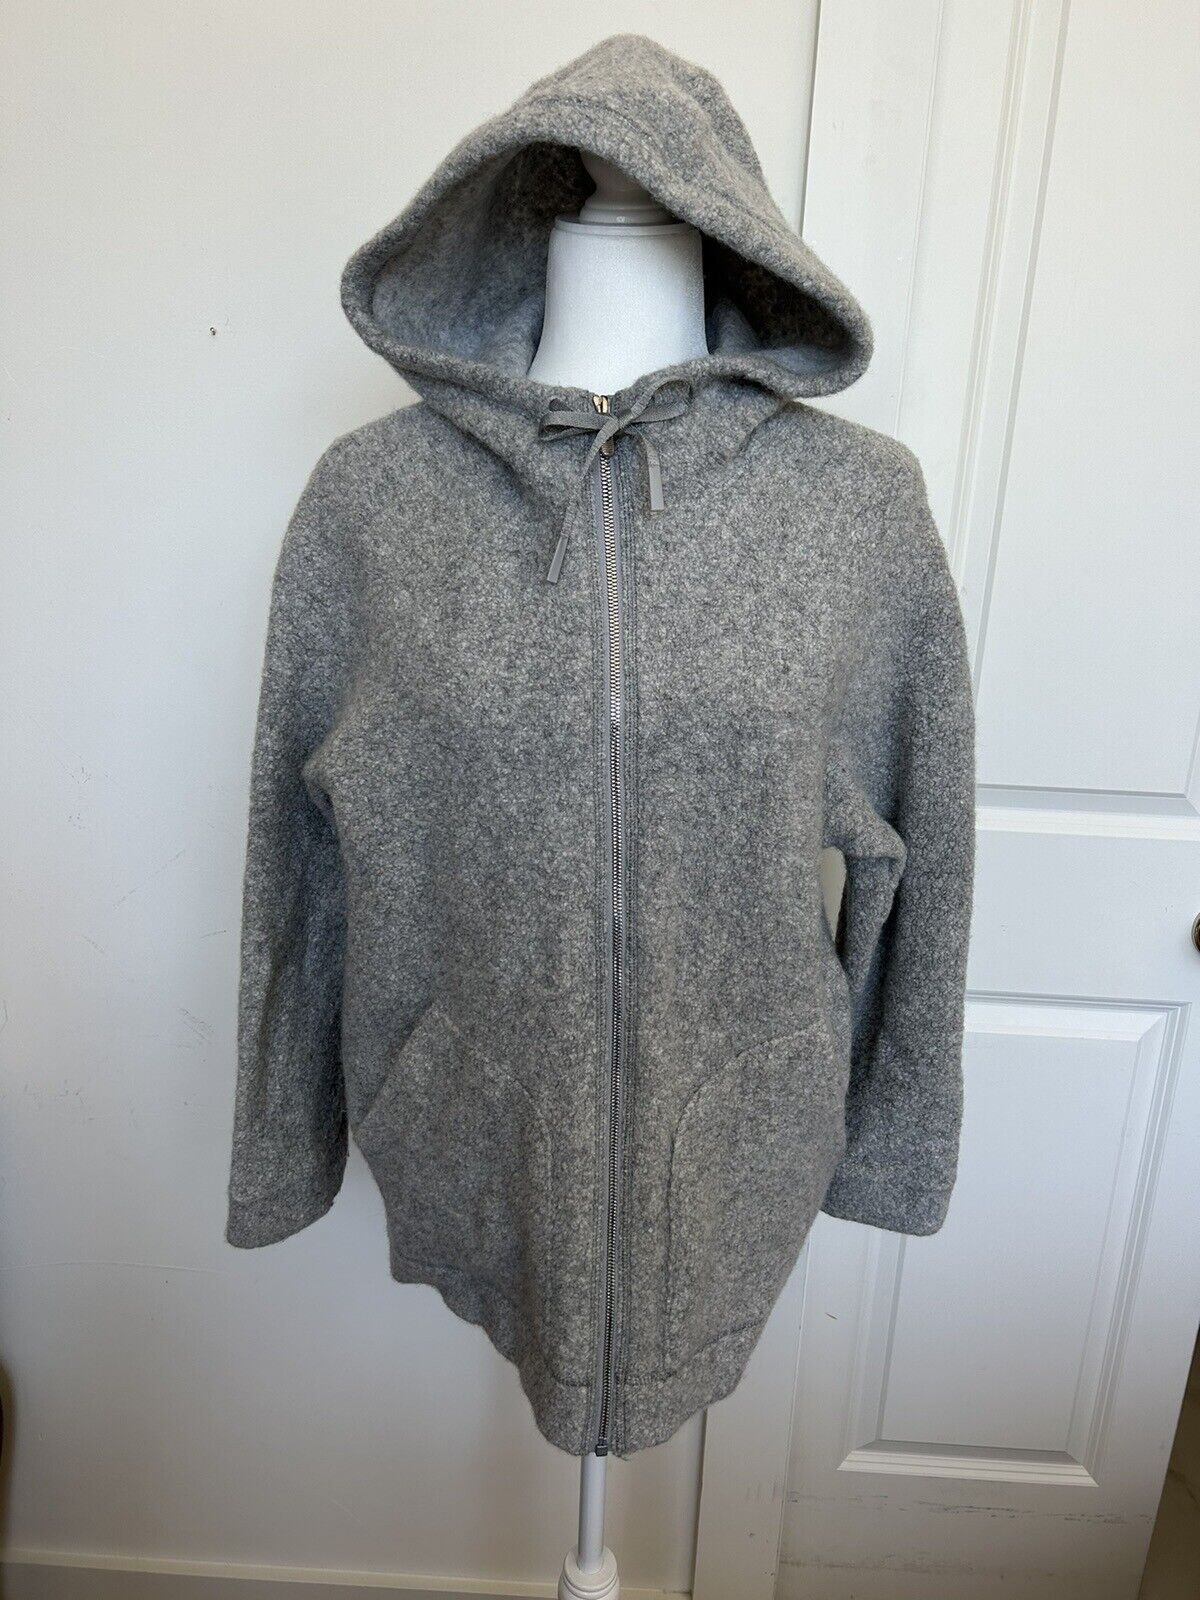 Lululemon zip up jacket with Drawstring hood fron… - image 1